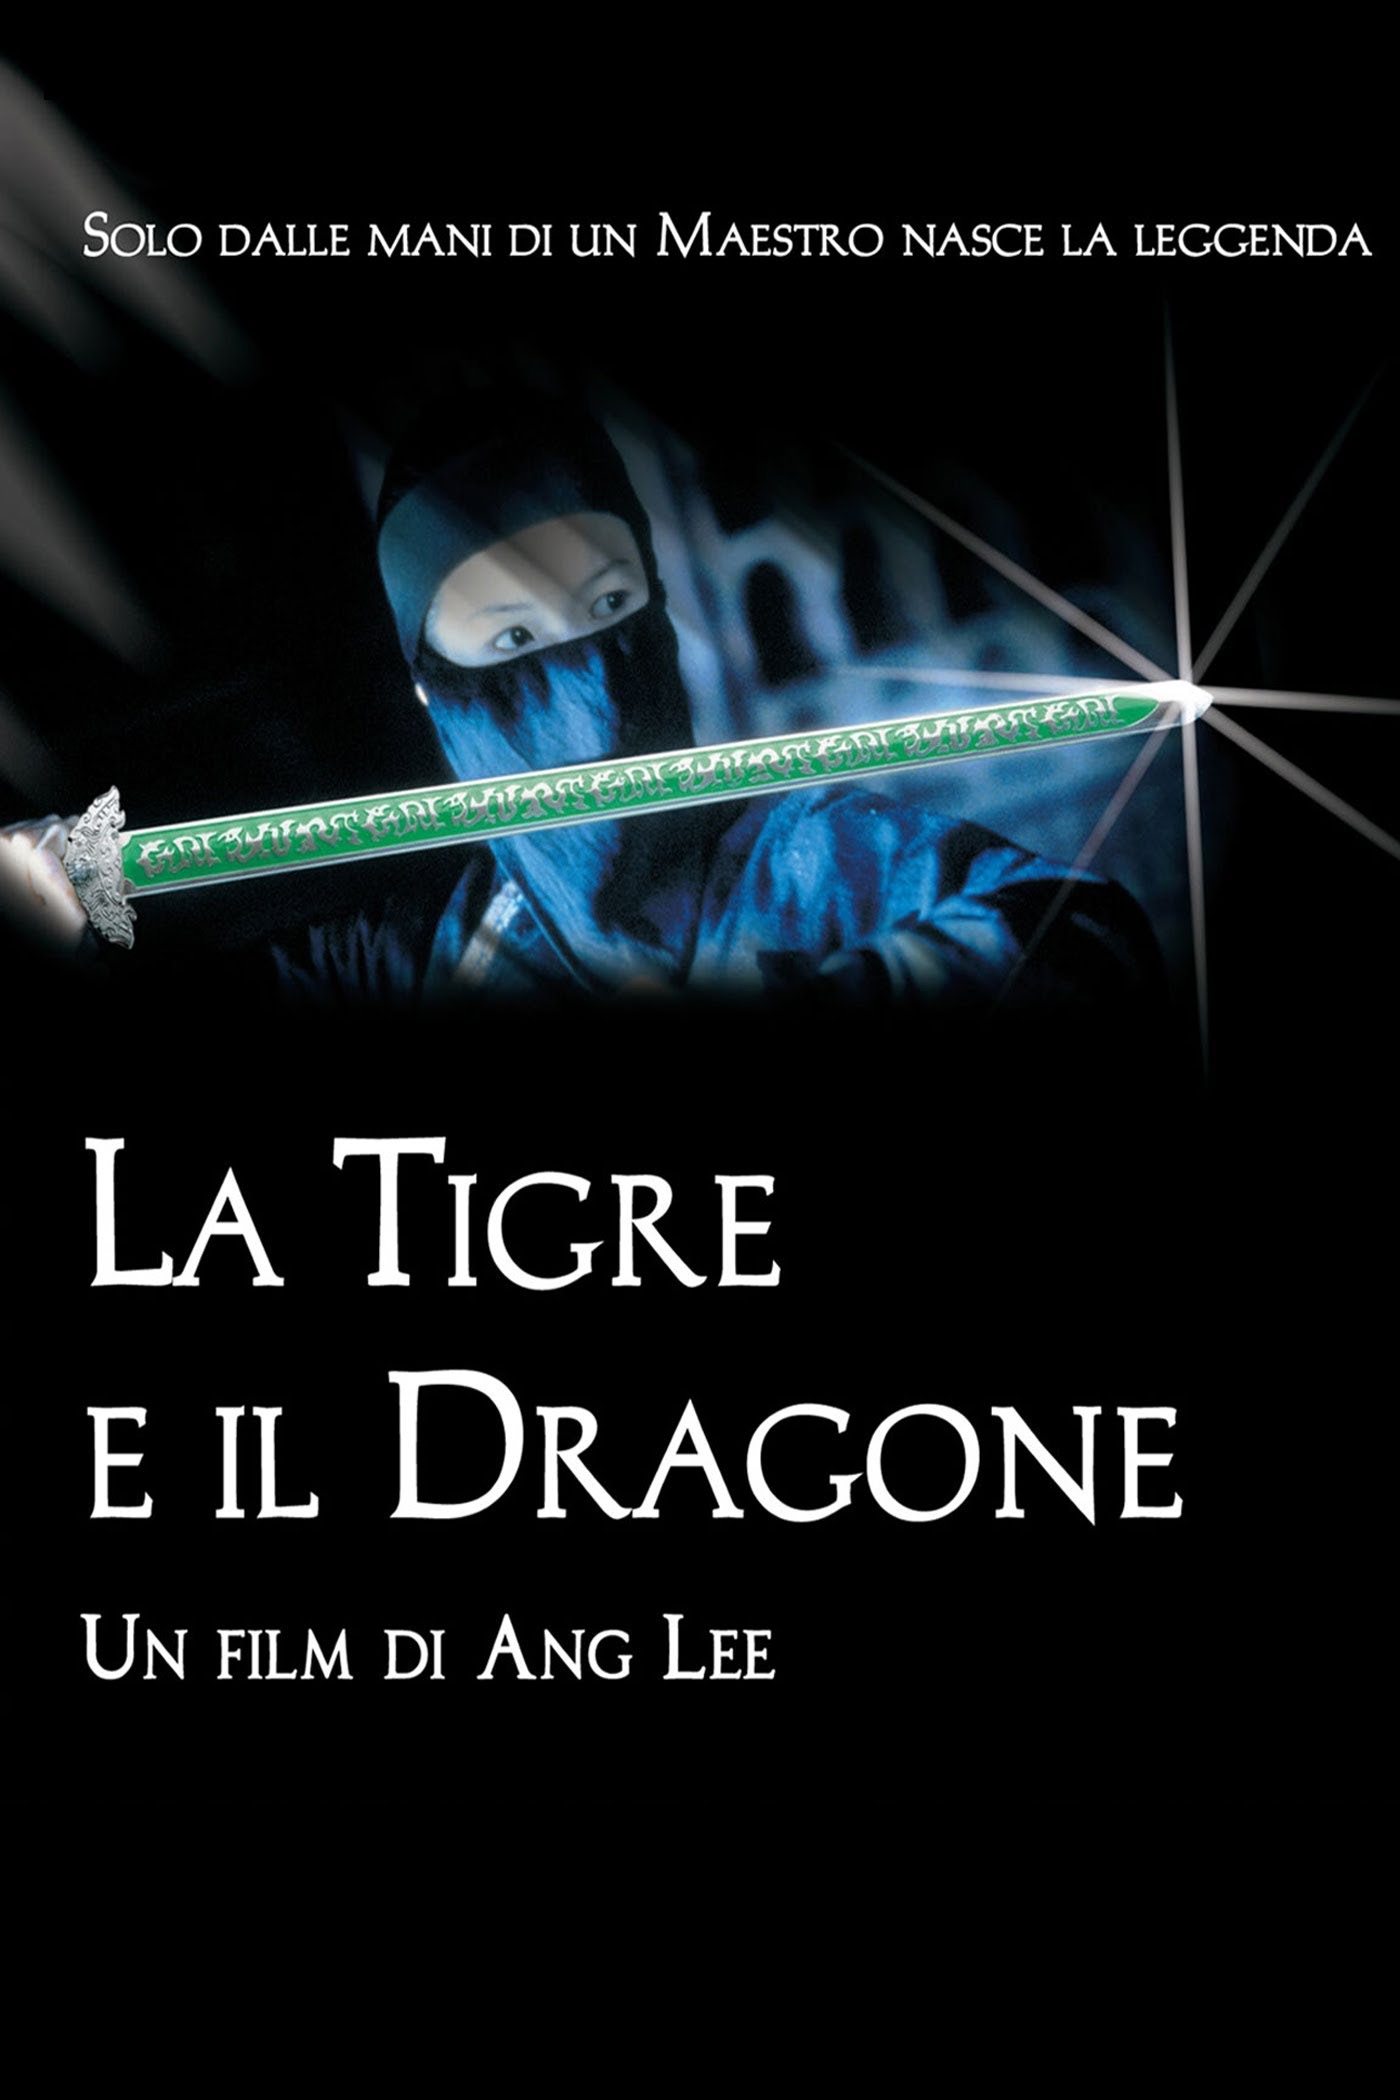 La tigre e il dragone [HD] (2000)